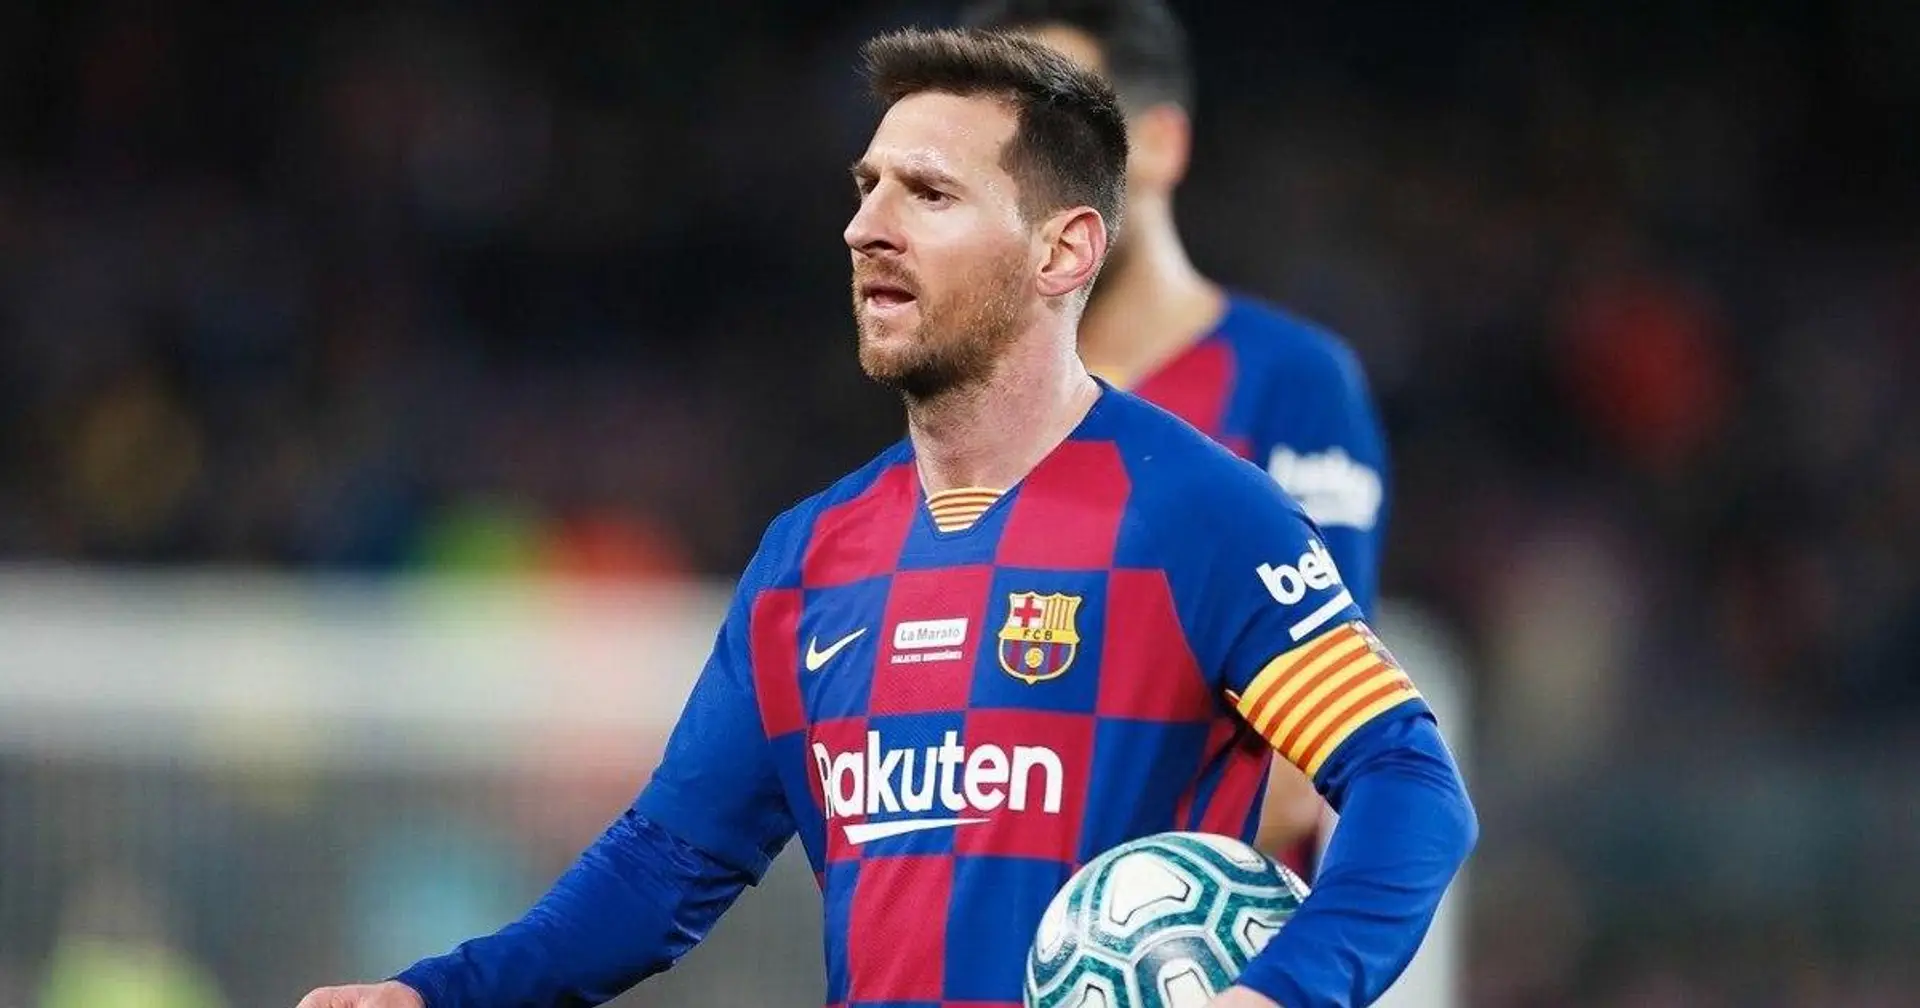 Leo Messi en course pour remporter le prix du plus grand nombre de petits ponts sur la saison 2019/20